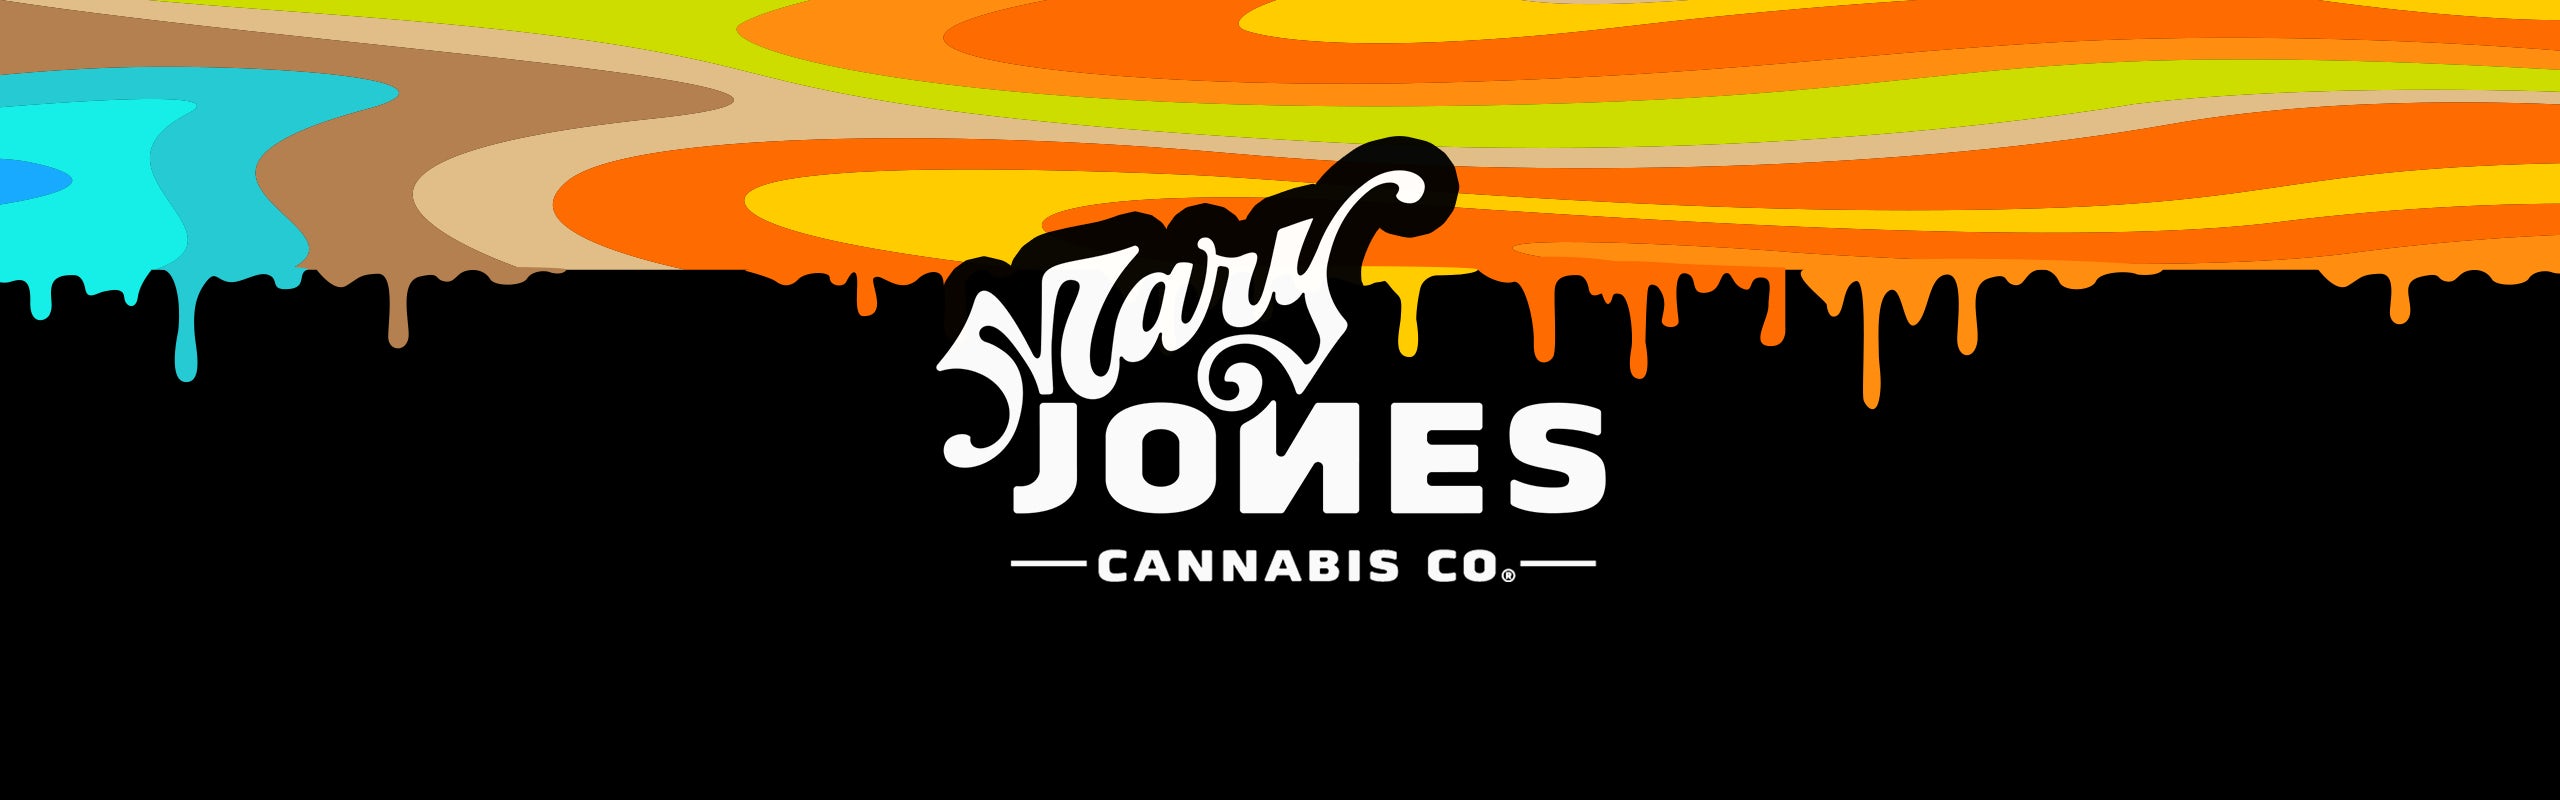 Mary Jones Cannabis Co banner